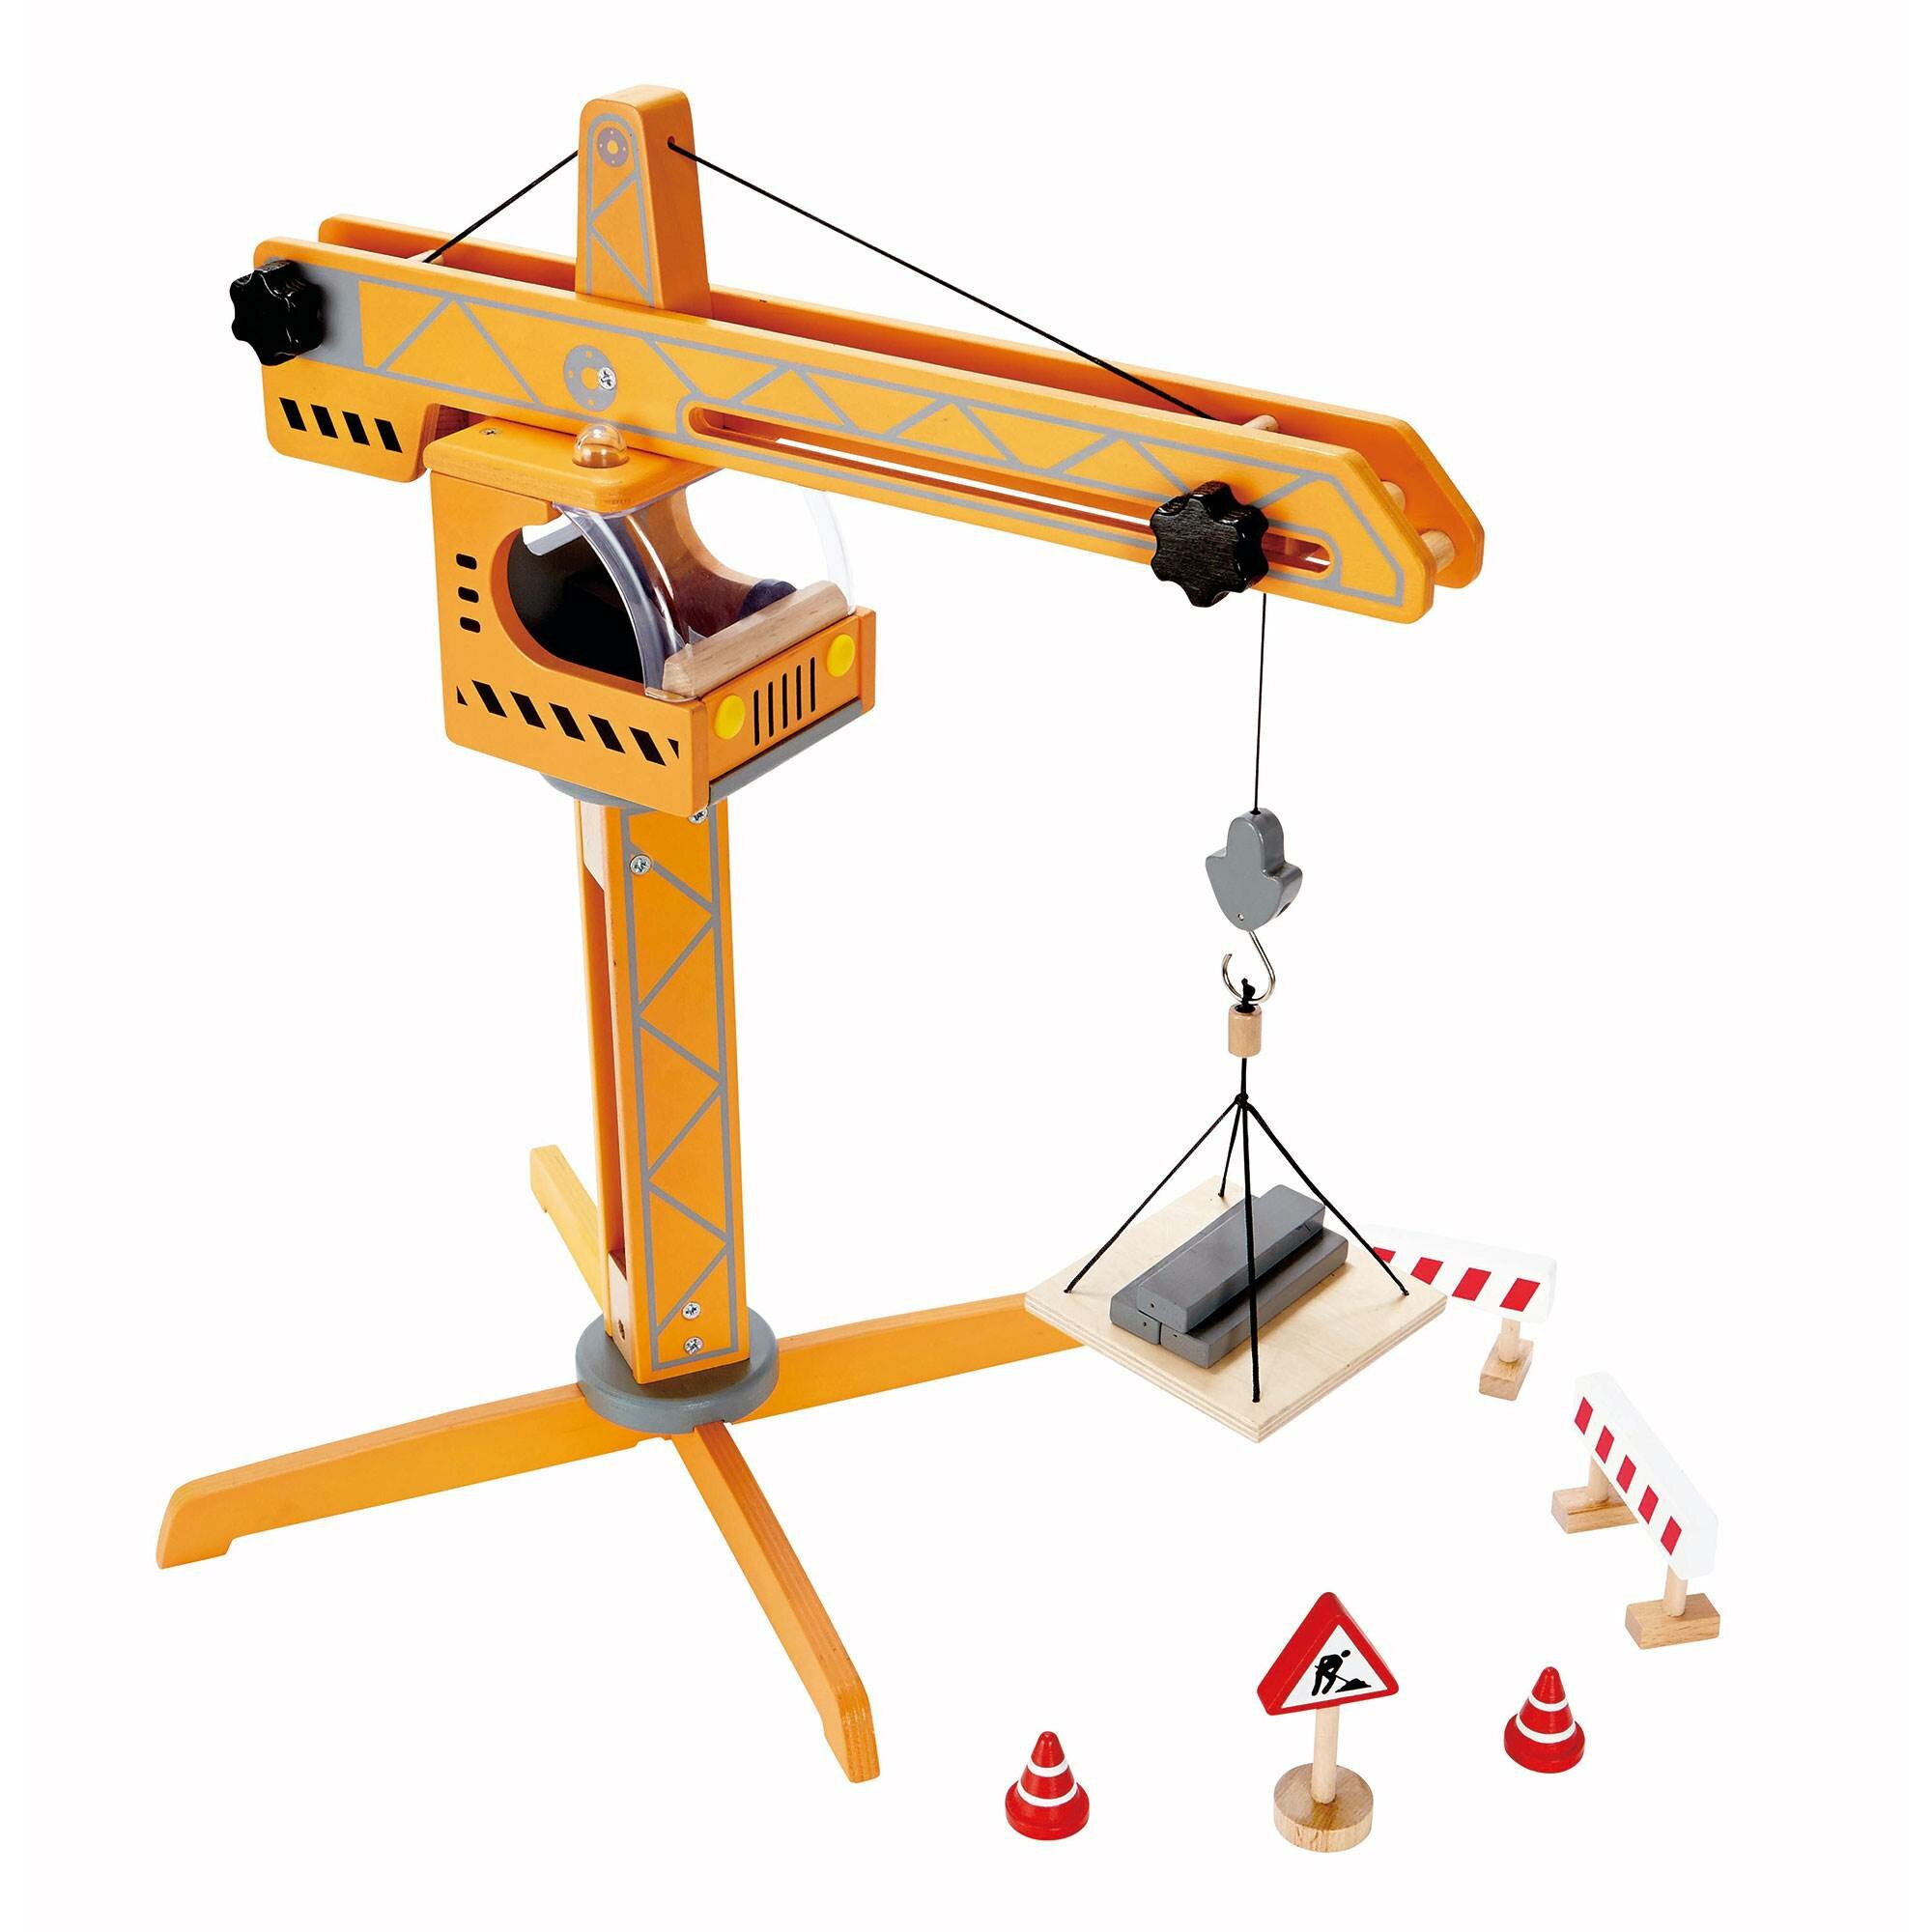 HaPe Construction Site Crane Lift Play Set & Reviews